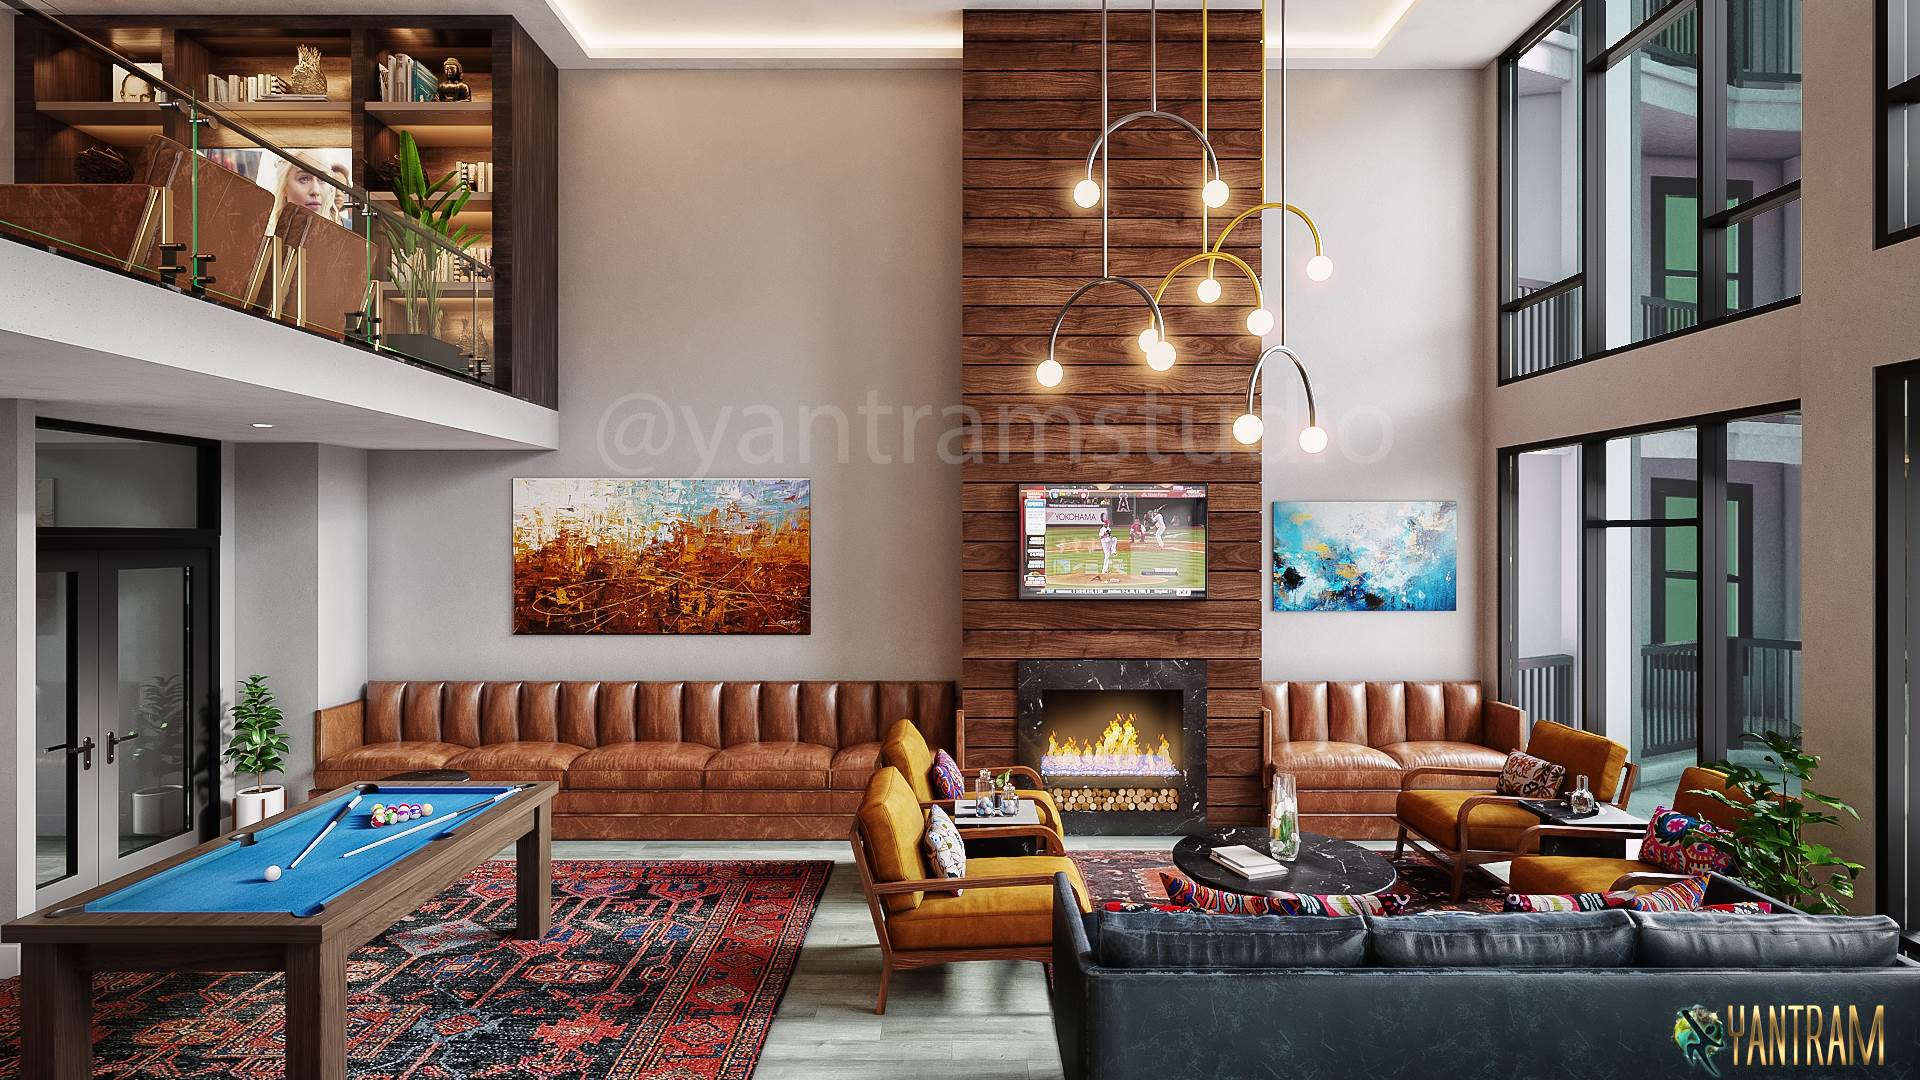 interior-design-by-architectural-design-studio.jpg -  by Yantramarchitecturaldesignstudio